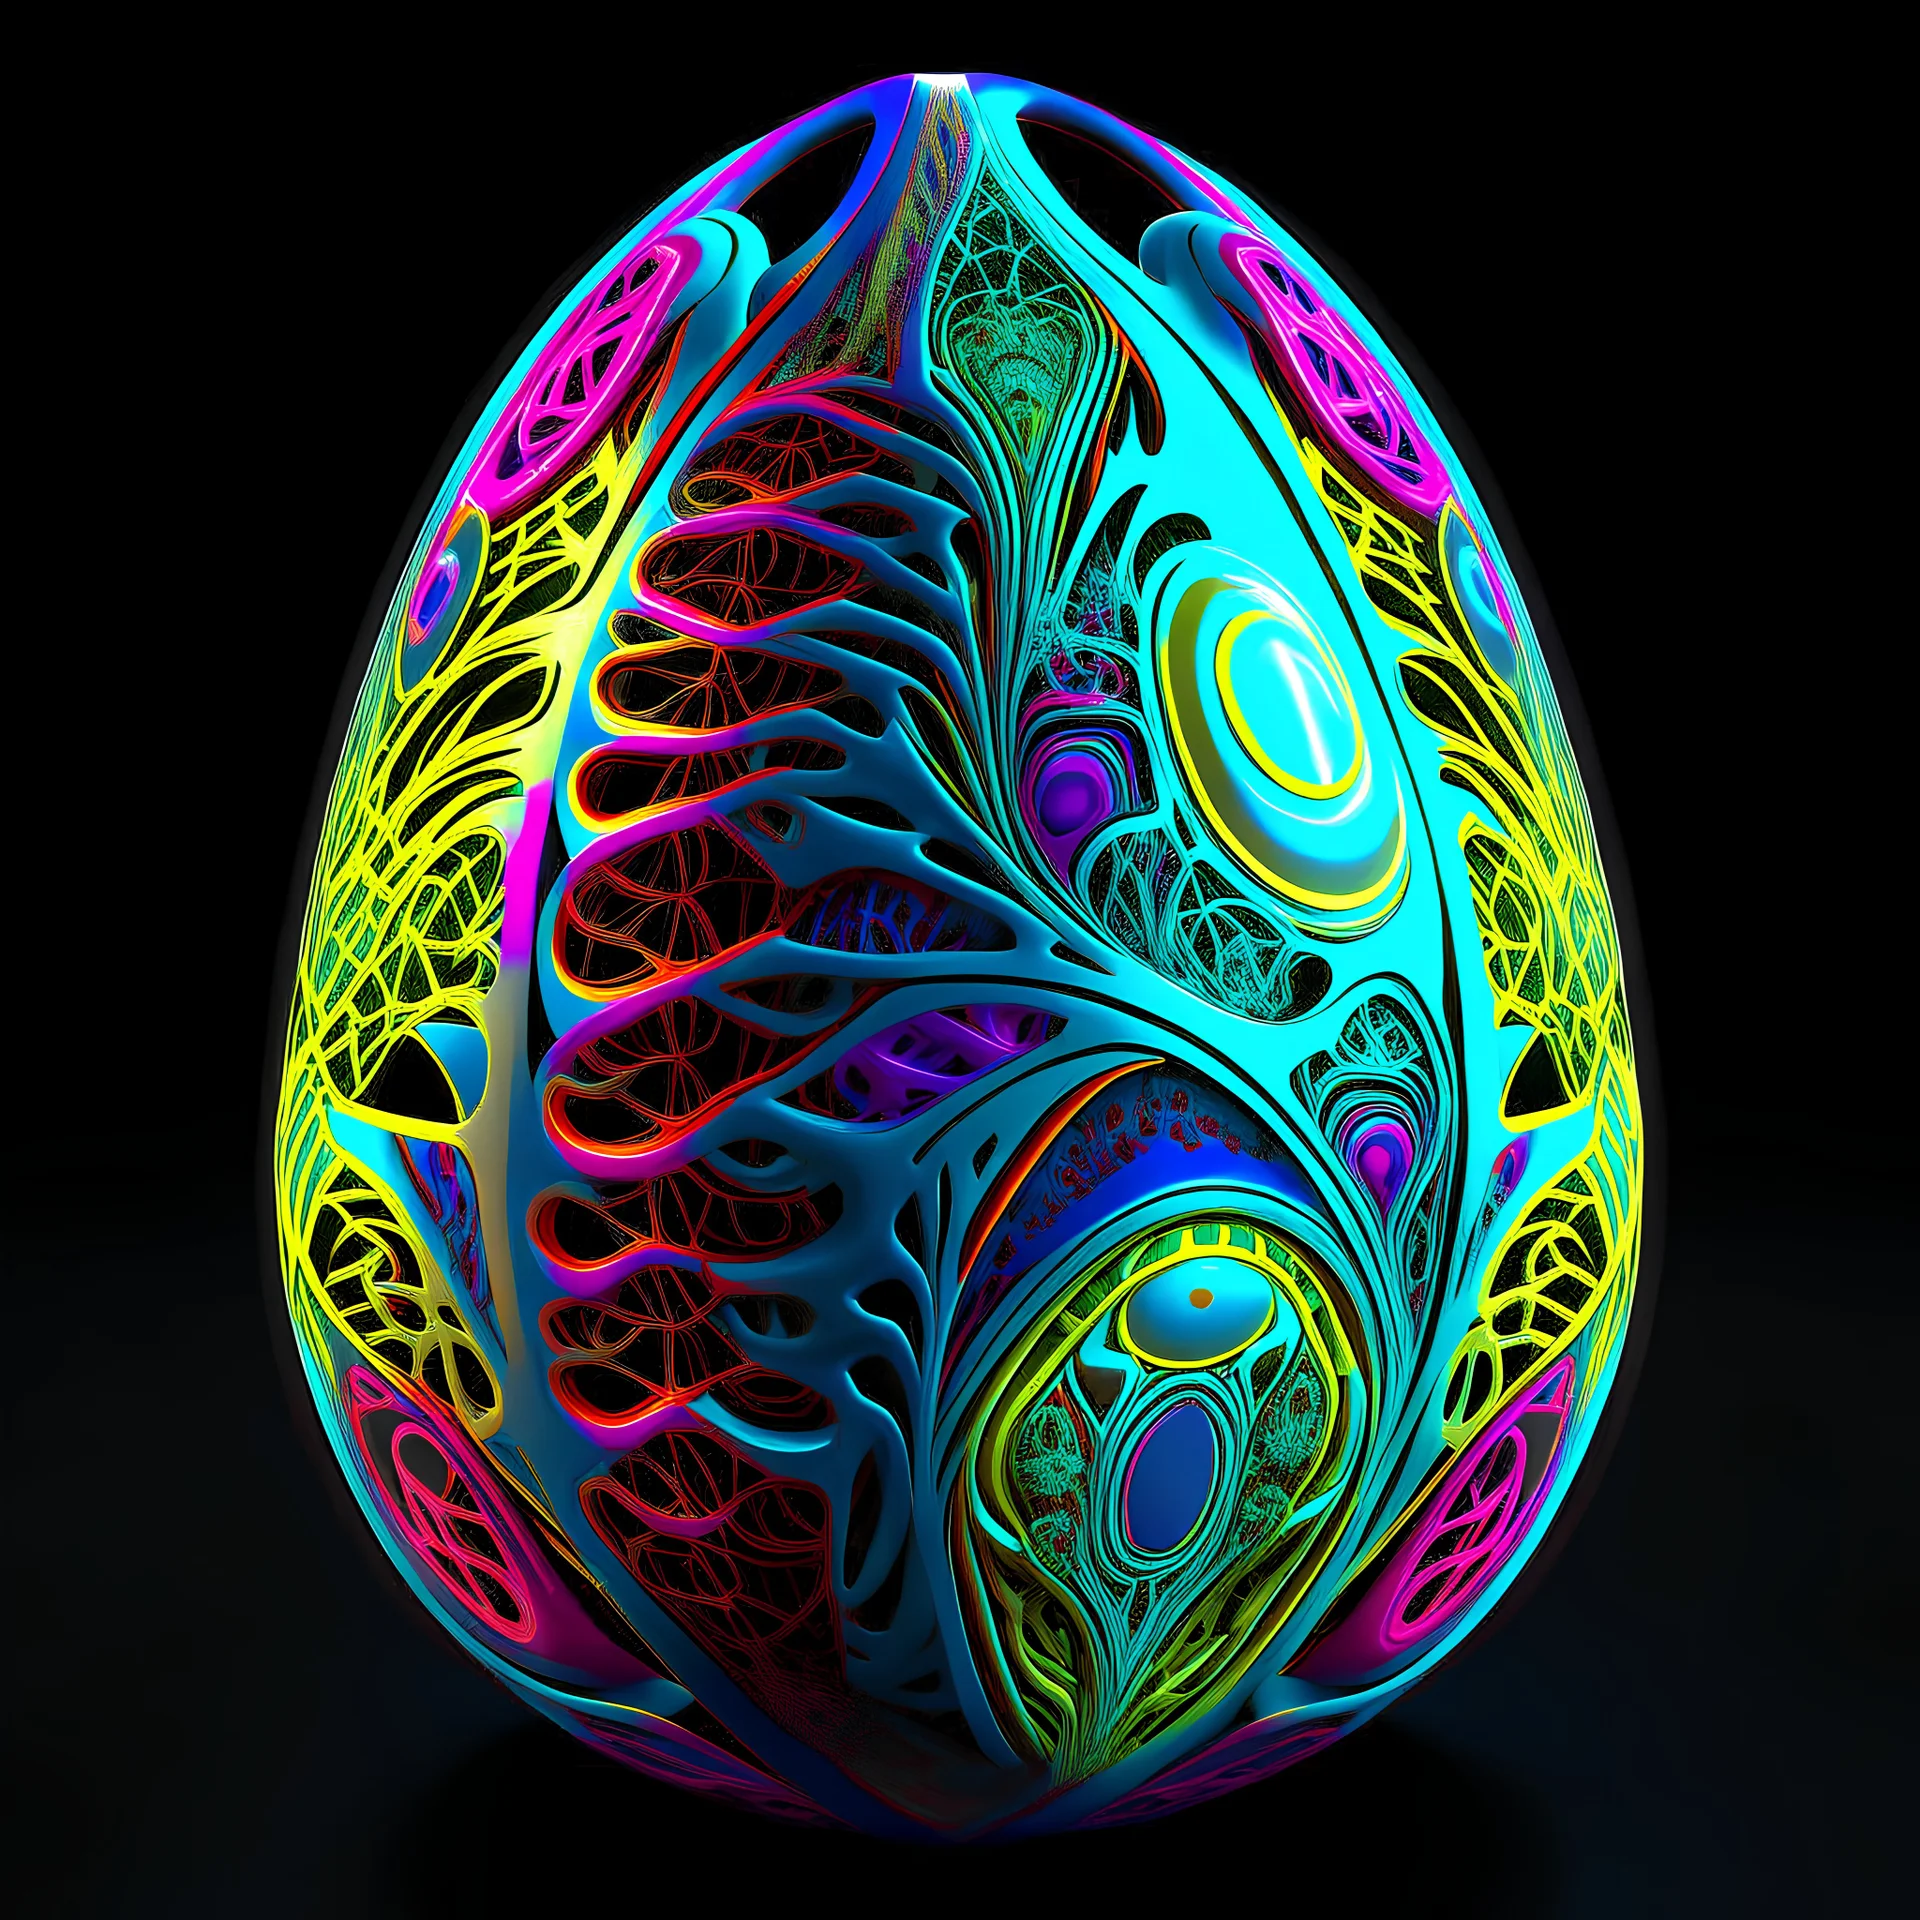 hyper detailed colorful subtractive egg fractal design with alien inside egg.